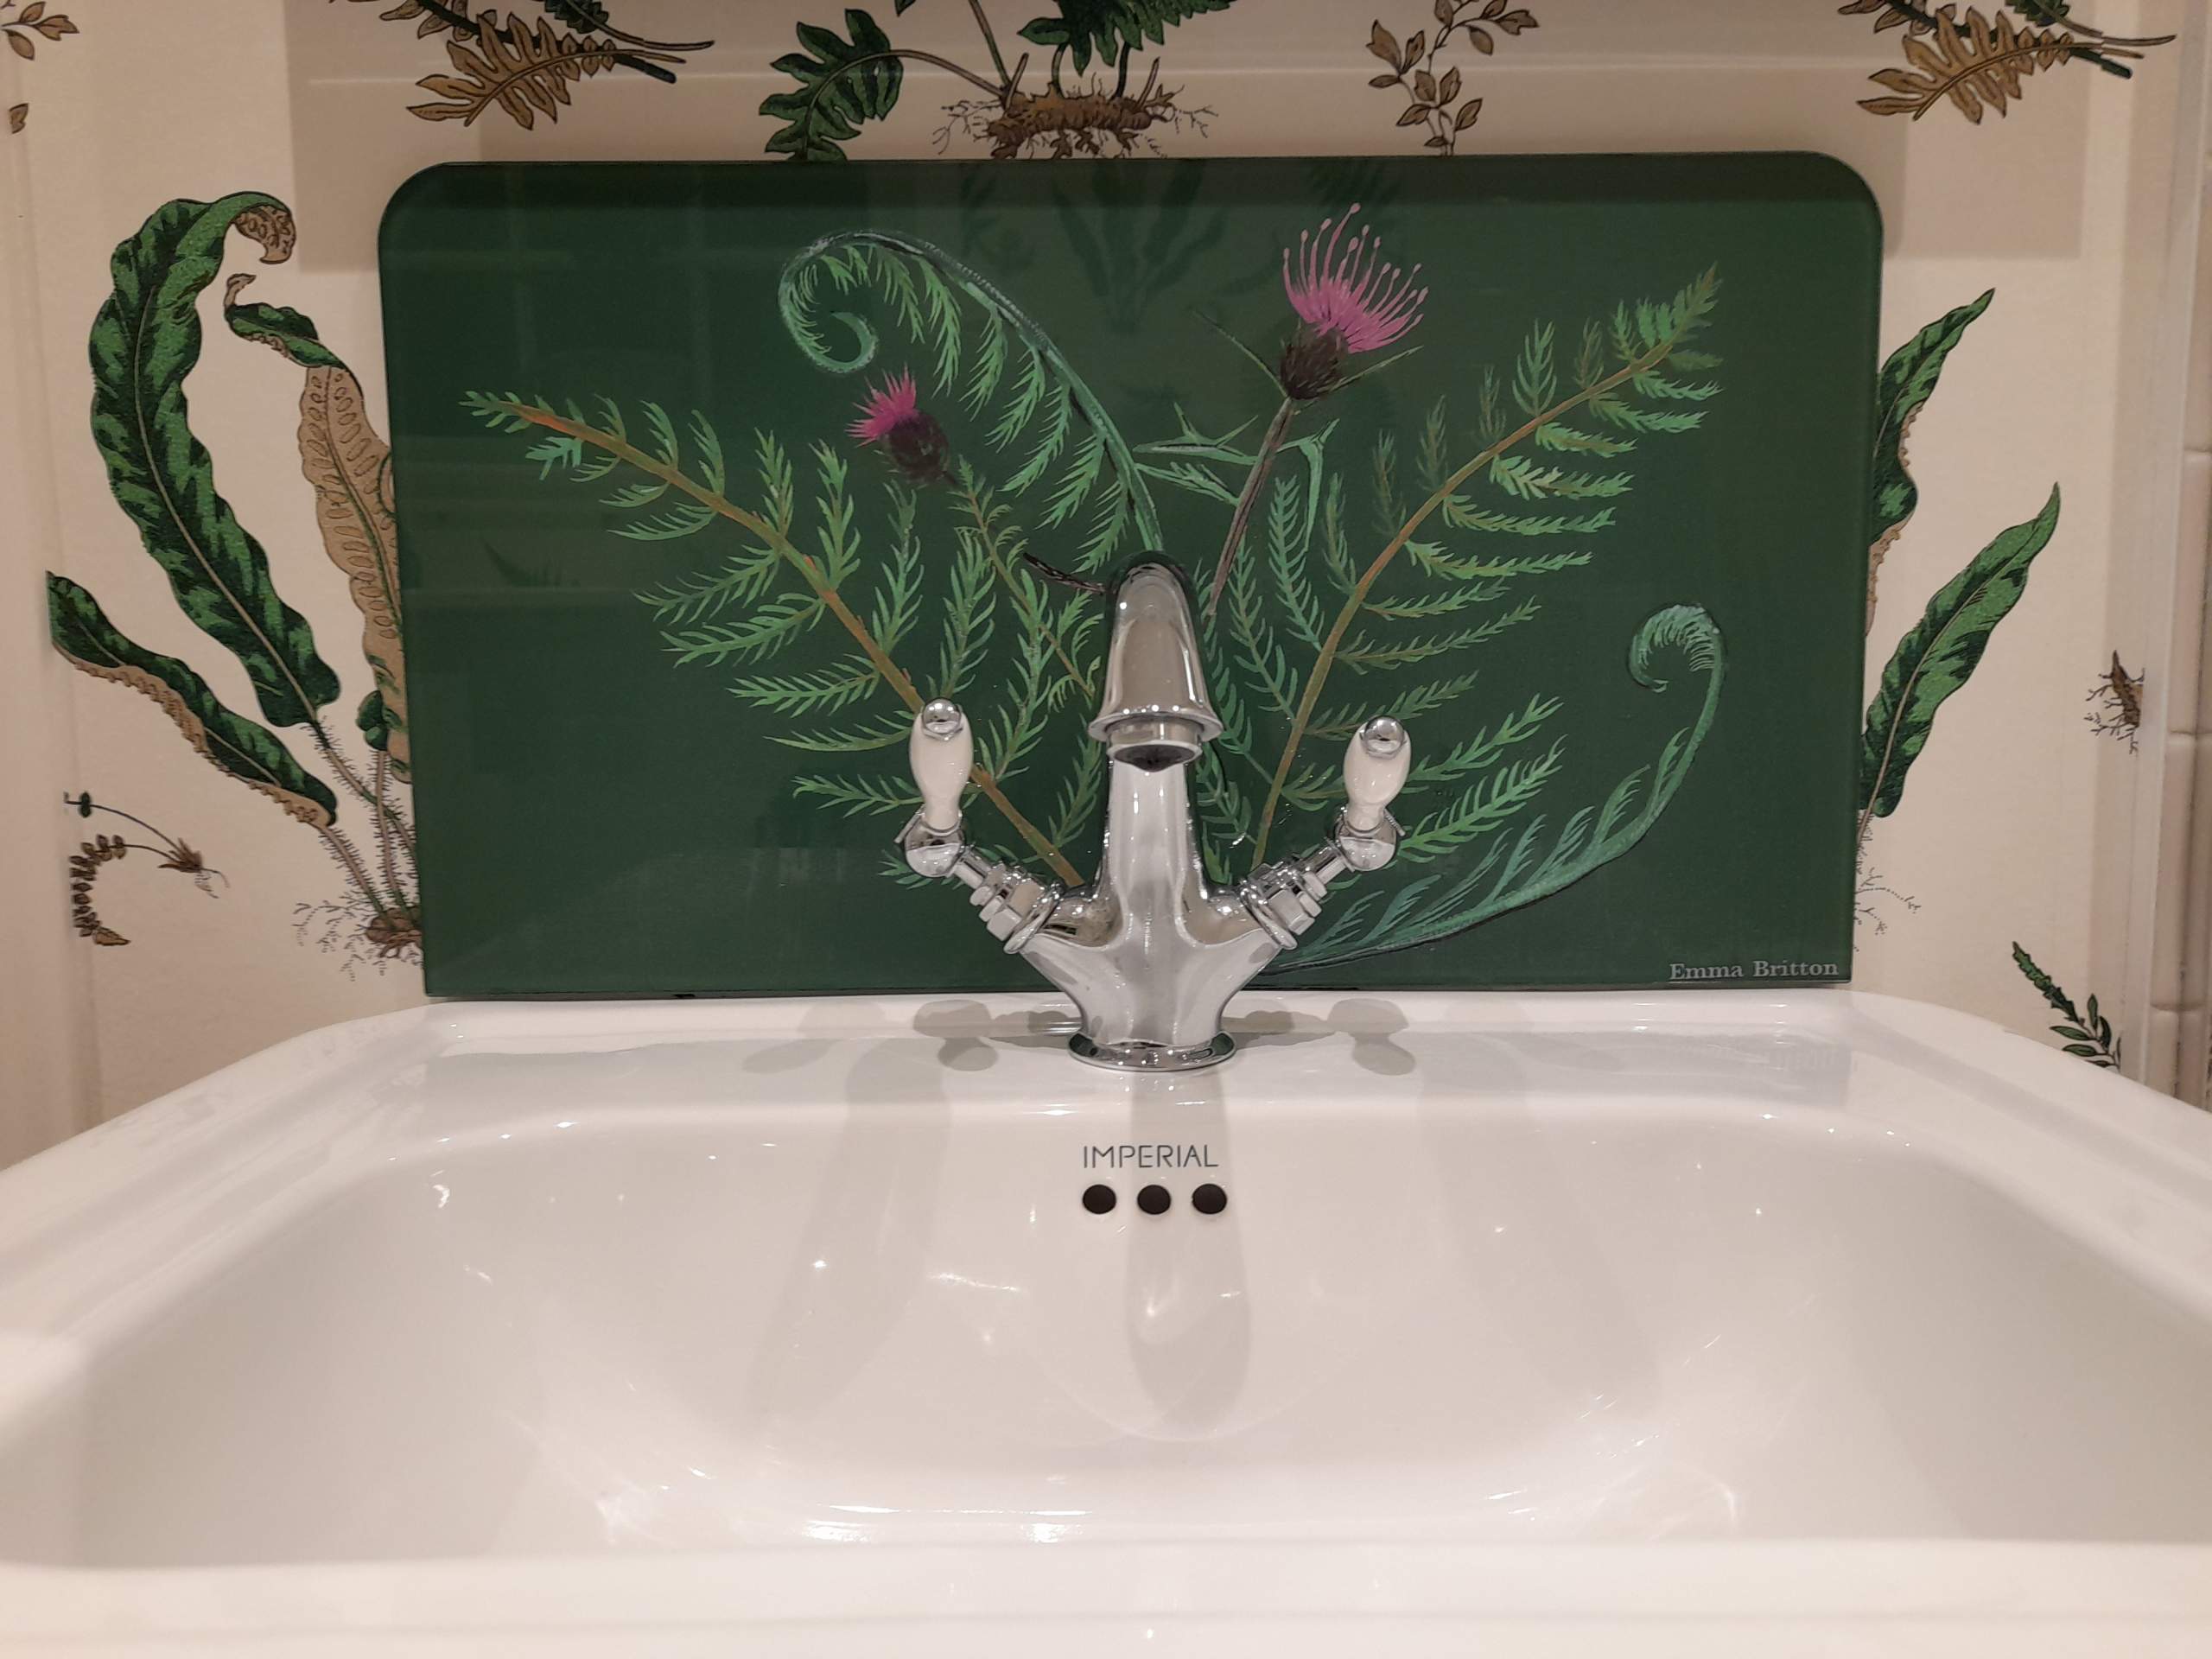 Splashback with fern design for sink